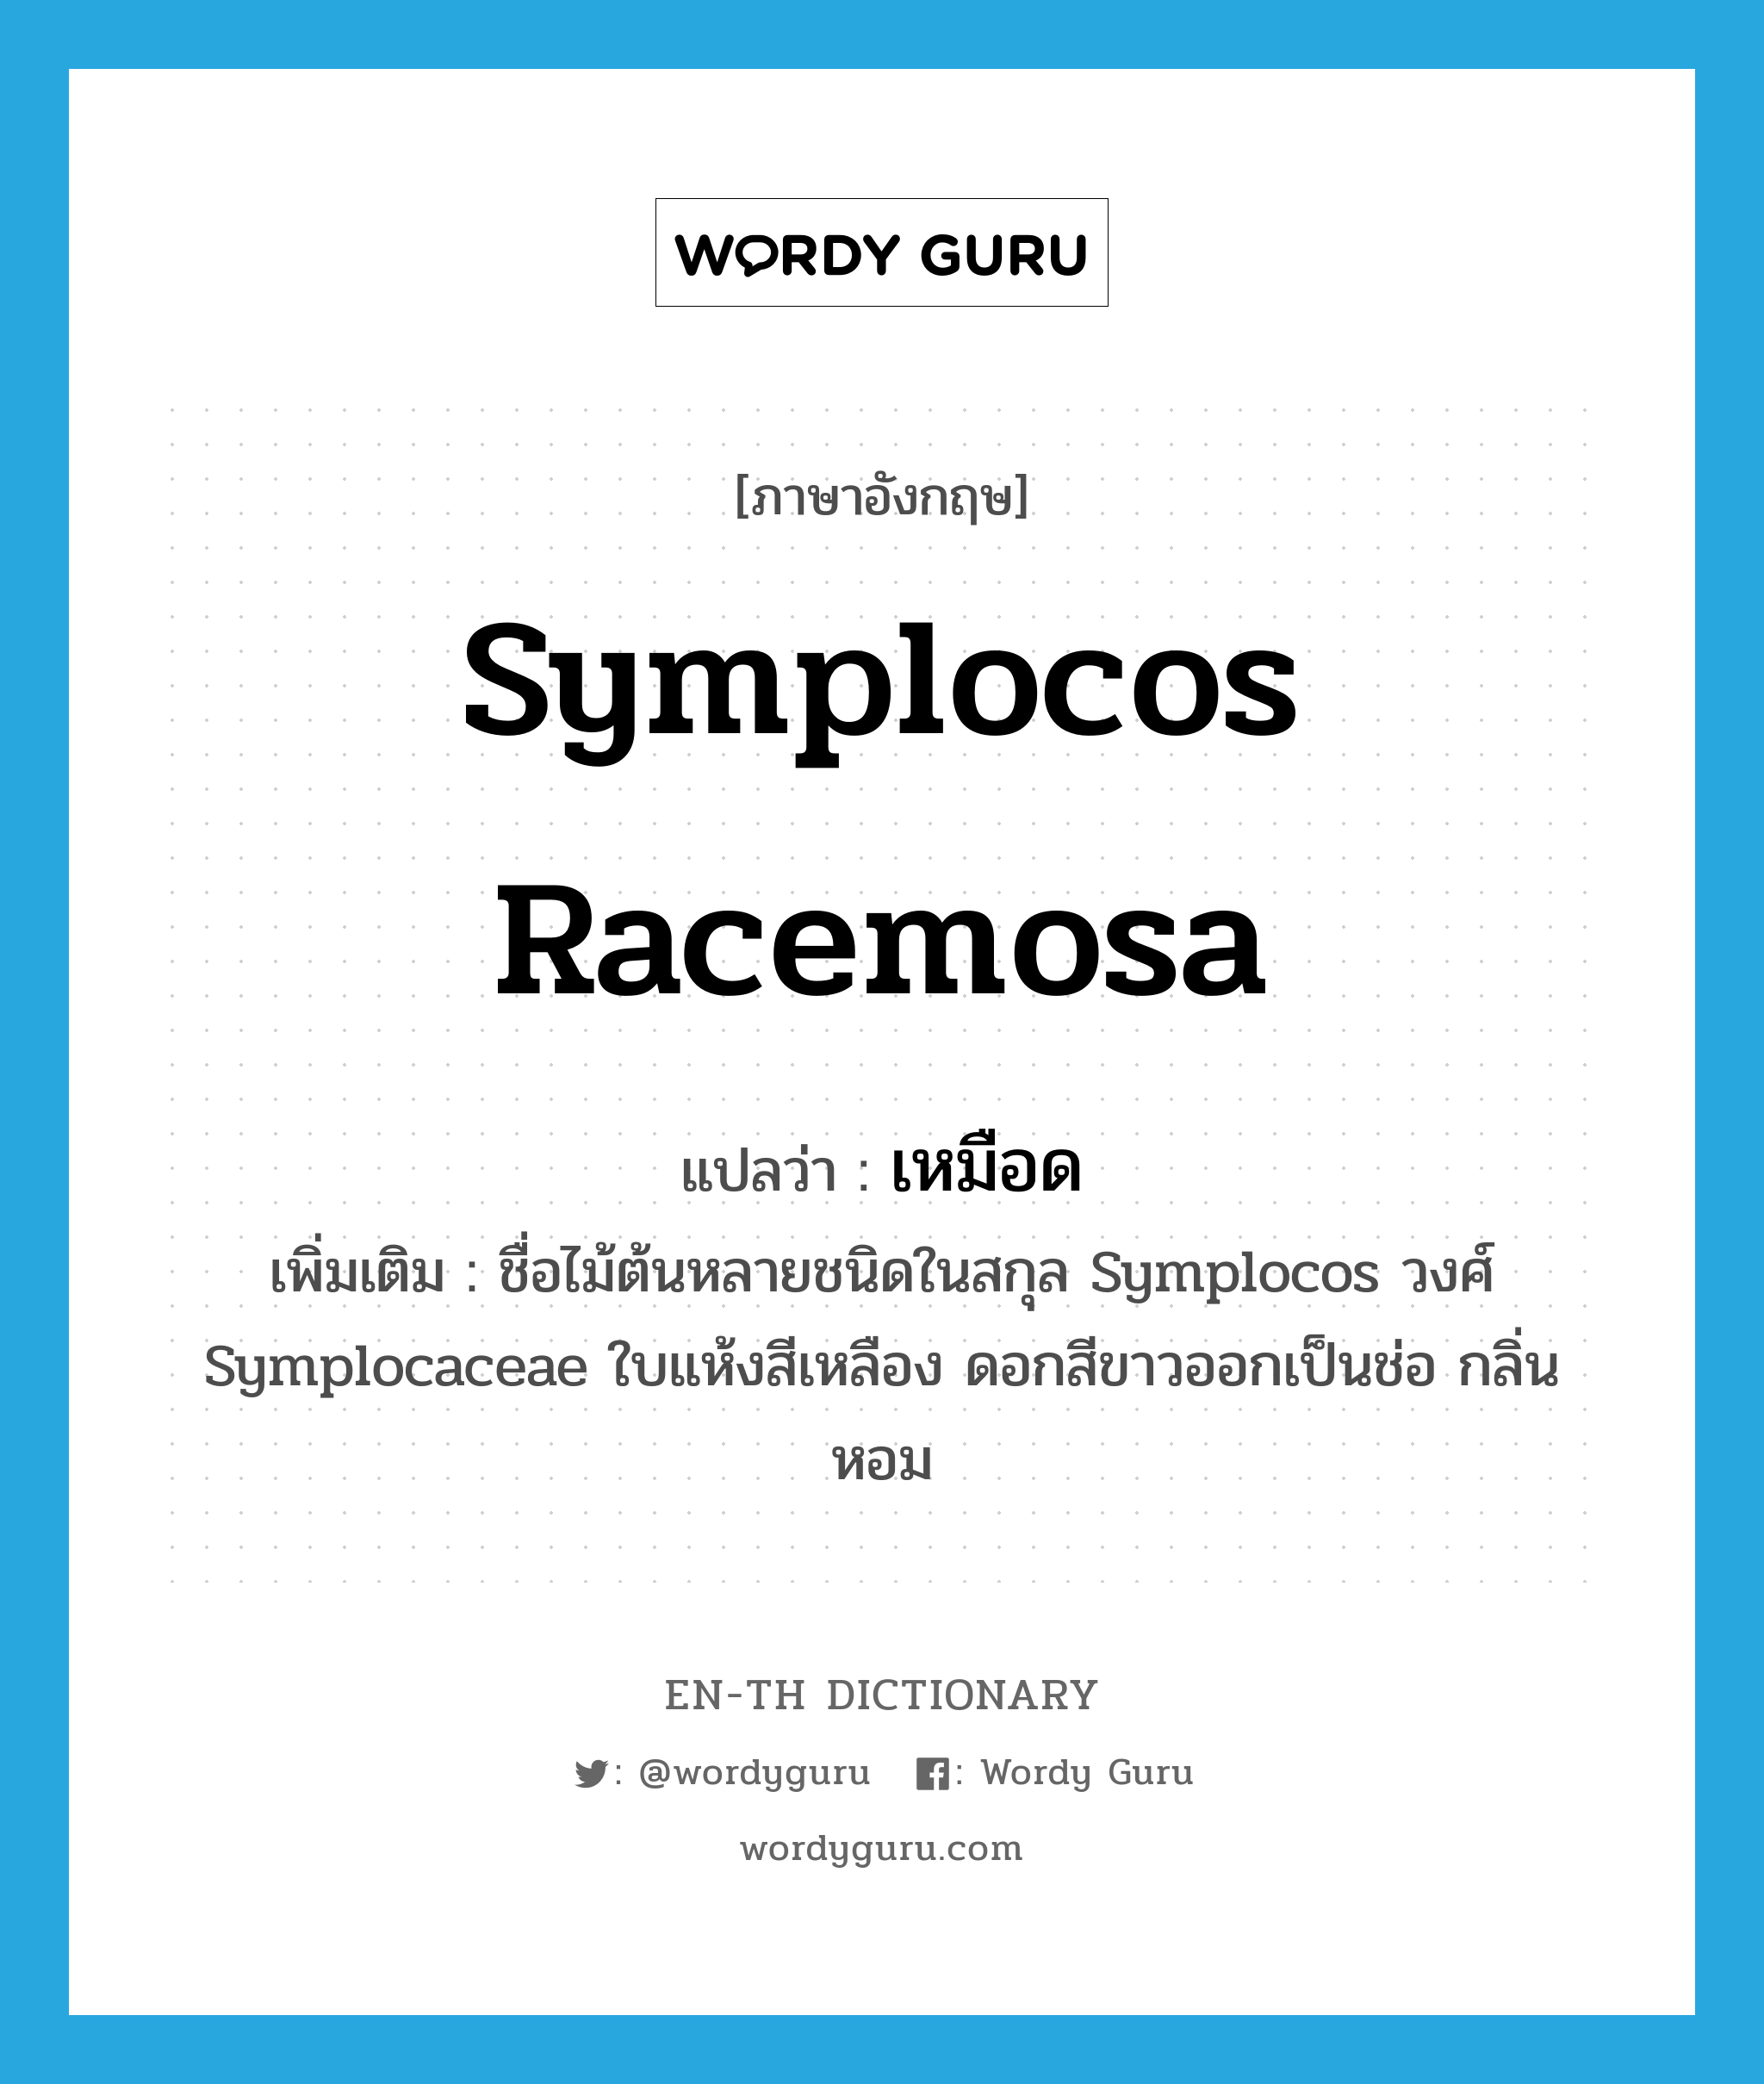 เหมือด ภาษาอังกฤษ?, คำศัพท์ภาษาอังกฤษ เหมือด แปลว่า Symplocos racemosa ประเภท N เพิ่มเติม ชื่อไม้ต้นหลายชนิดในสกุล Symplocos วงศ์ Symplocaceae ใบแห้งสีเหลือง ดอกสีขาวออกเป็นช่อ กลิ่นหอม หมวด N